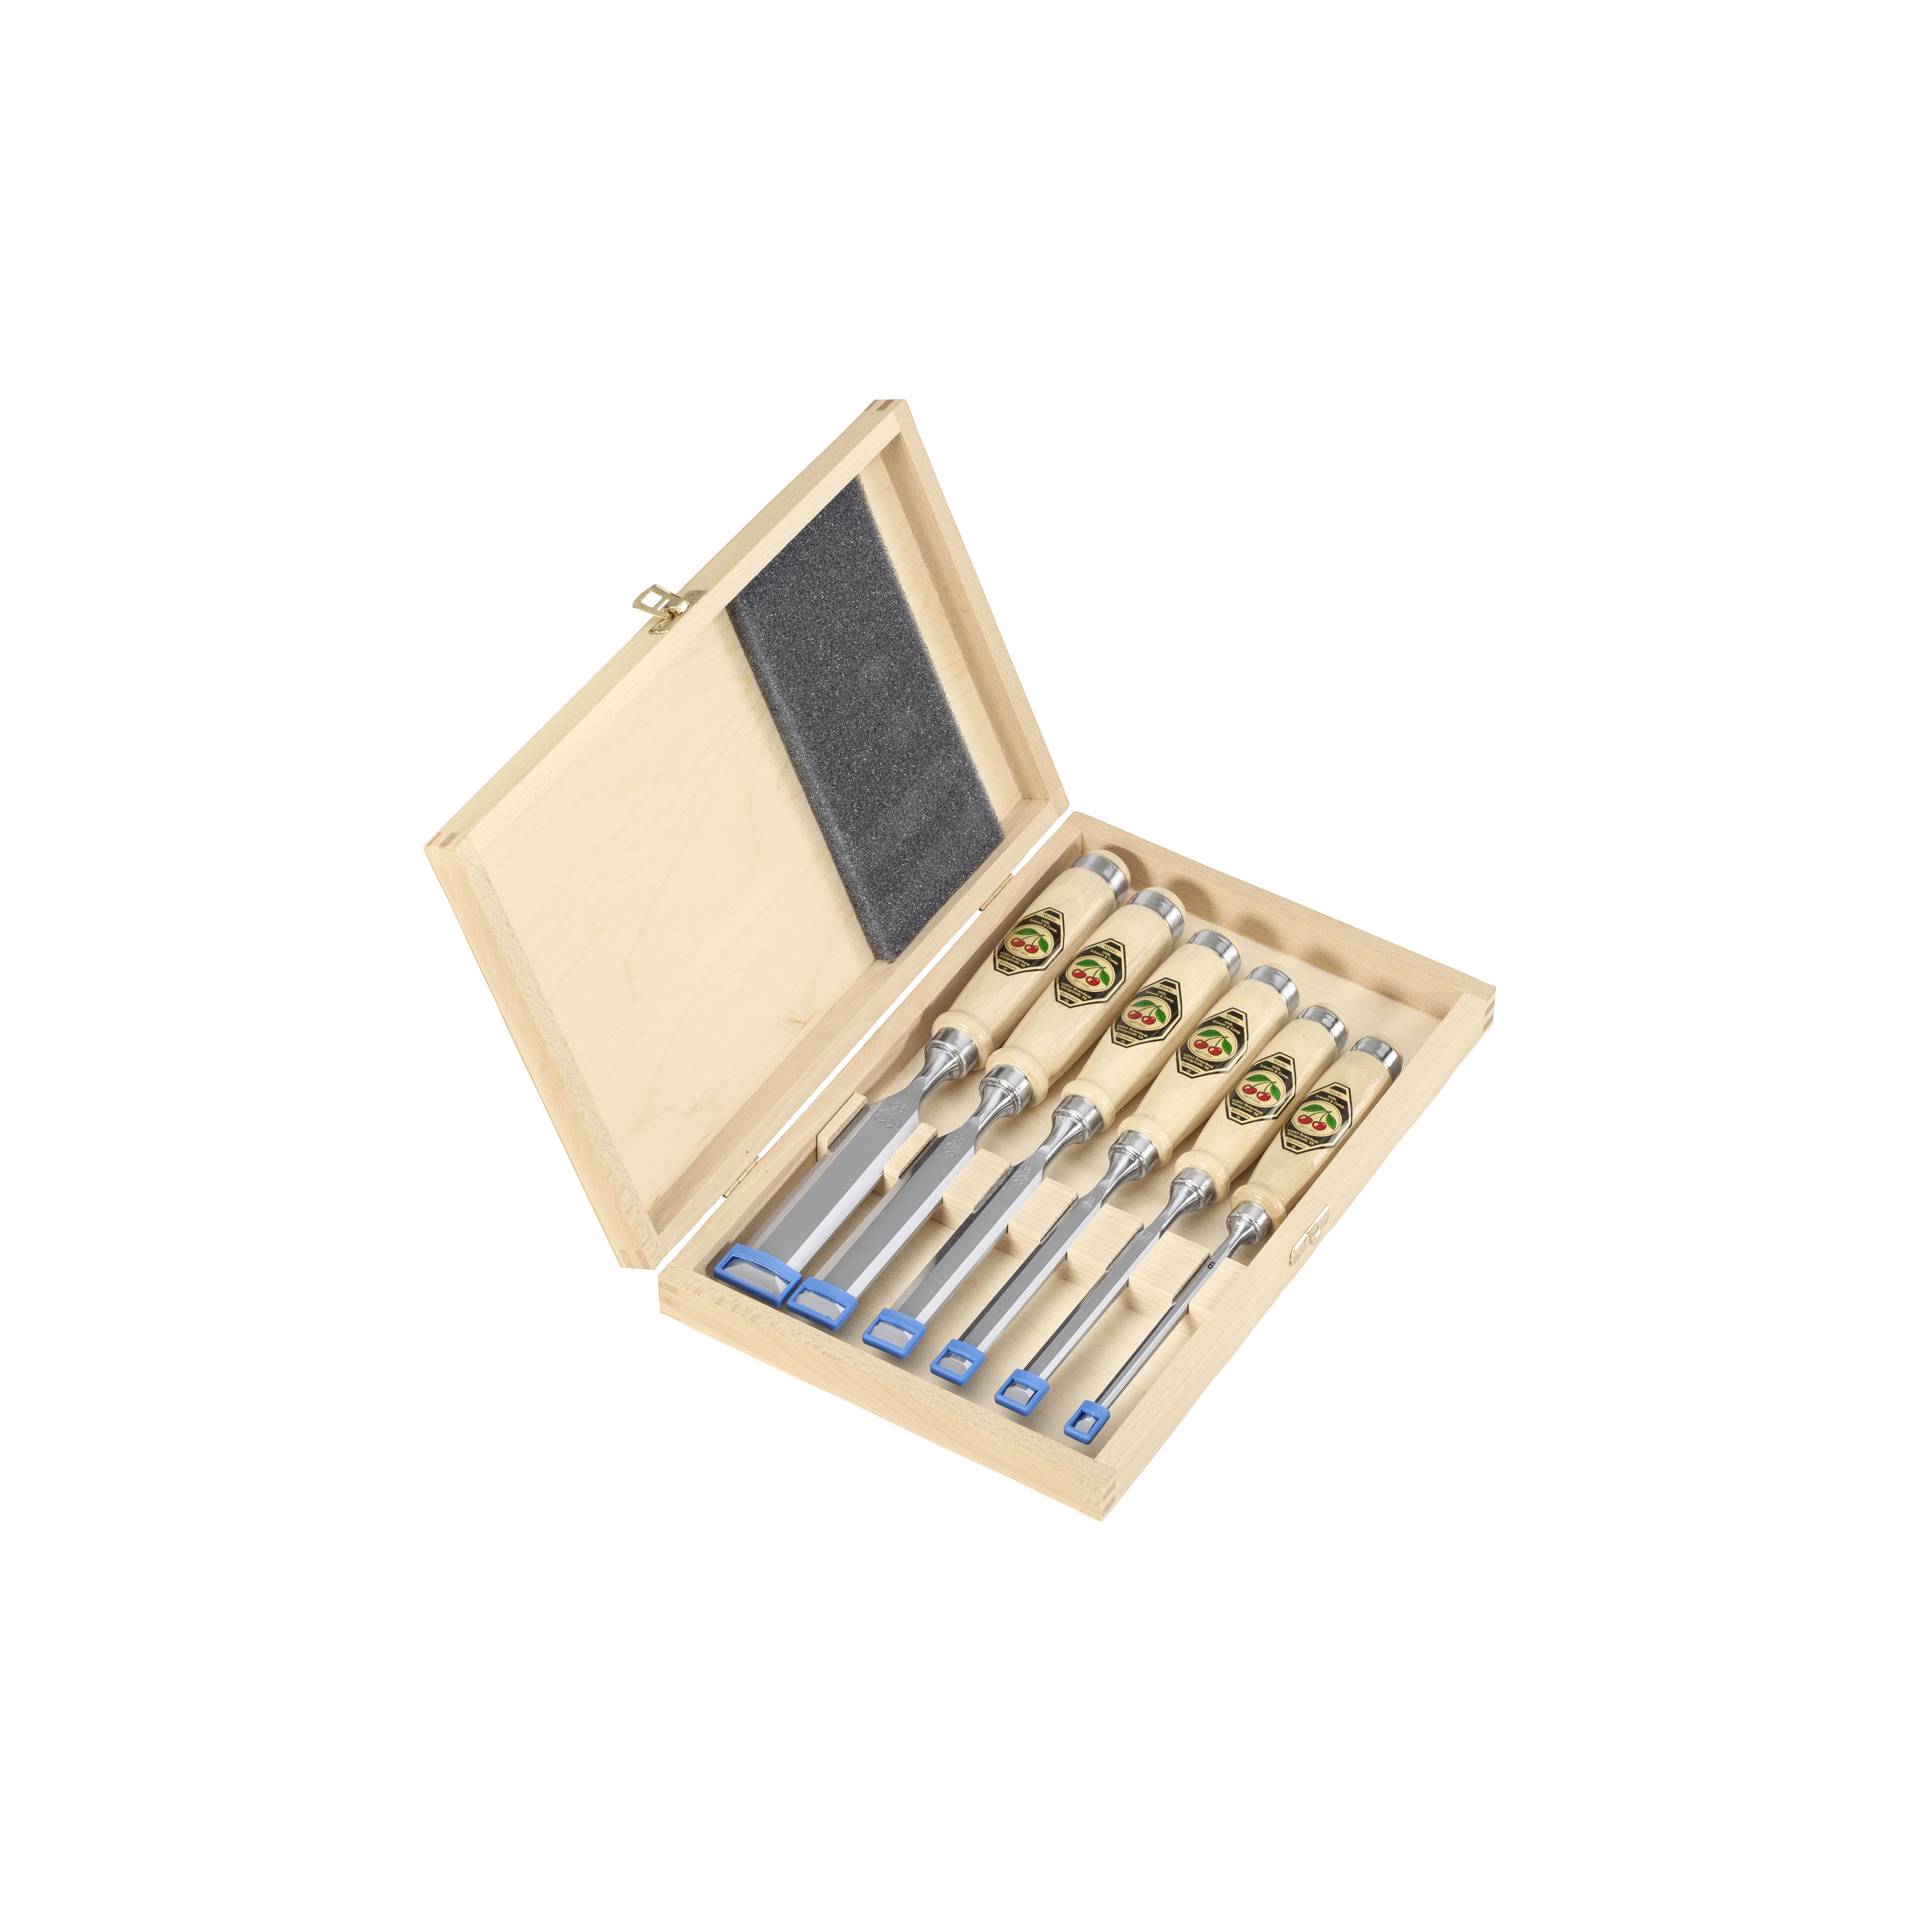 Kirschen set scalpelli  1101 HK 6 pz in cassetta di legno